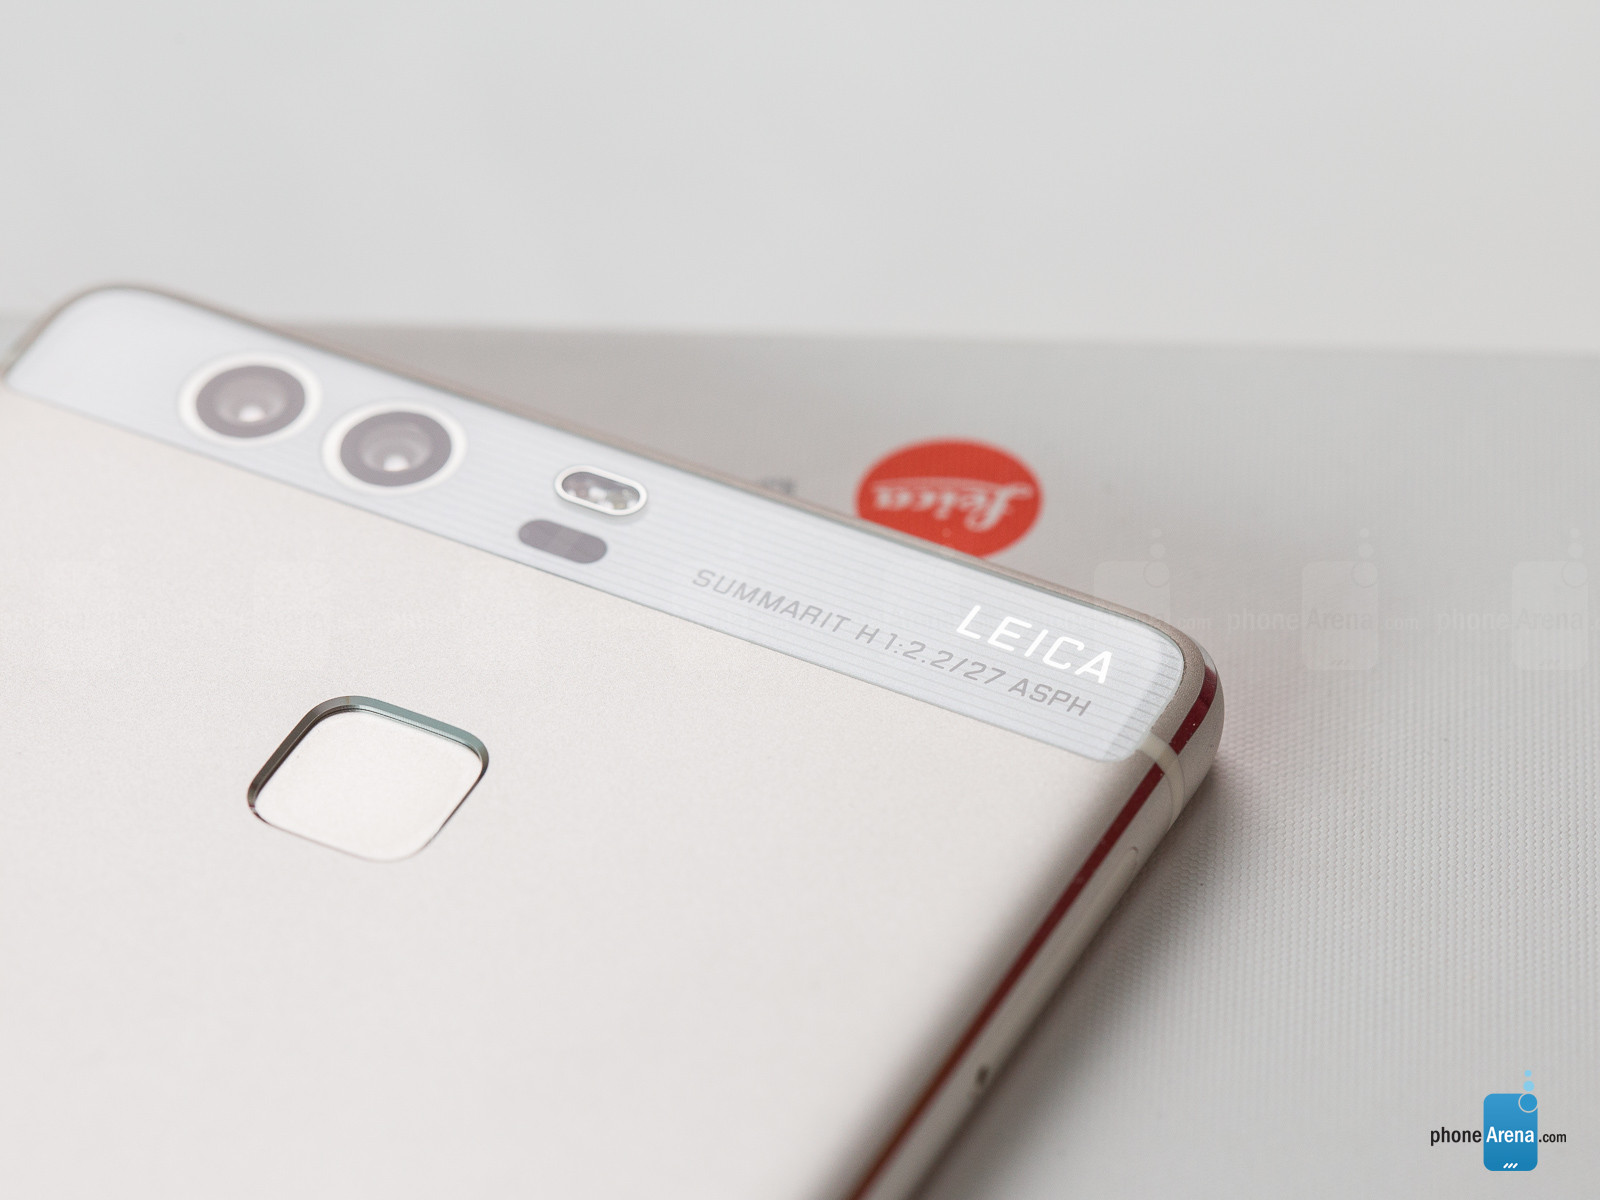 Huawei P9 sẽ được cập nhật Android 7.0 Nougat trong tháng 3 này